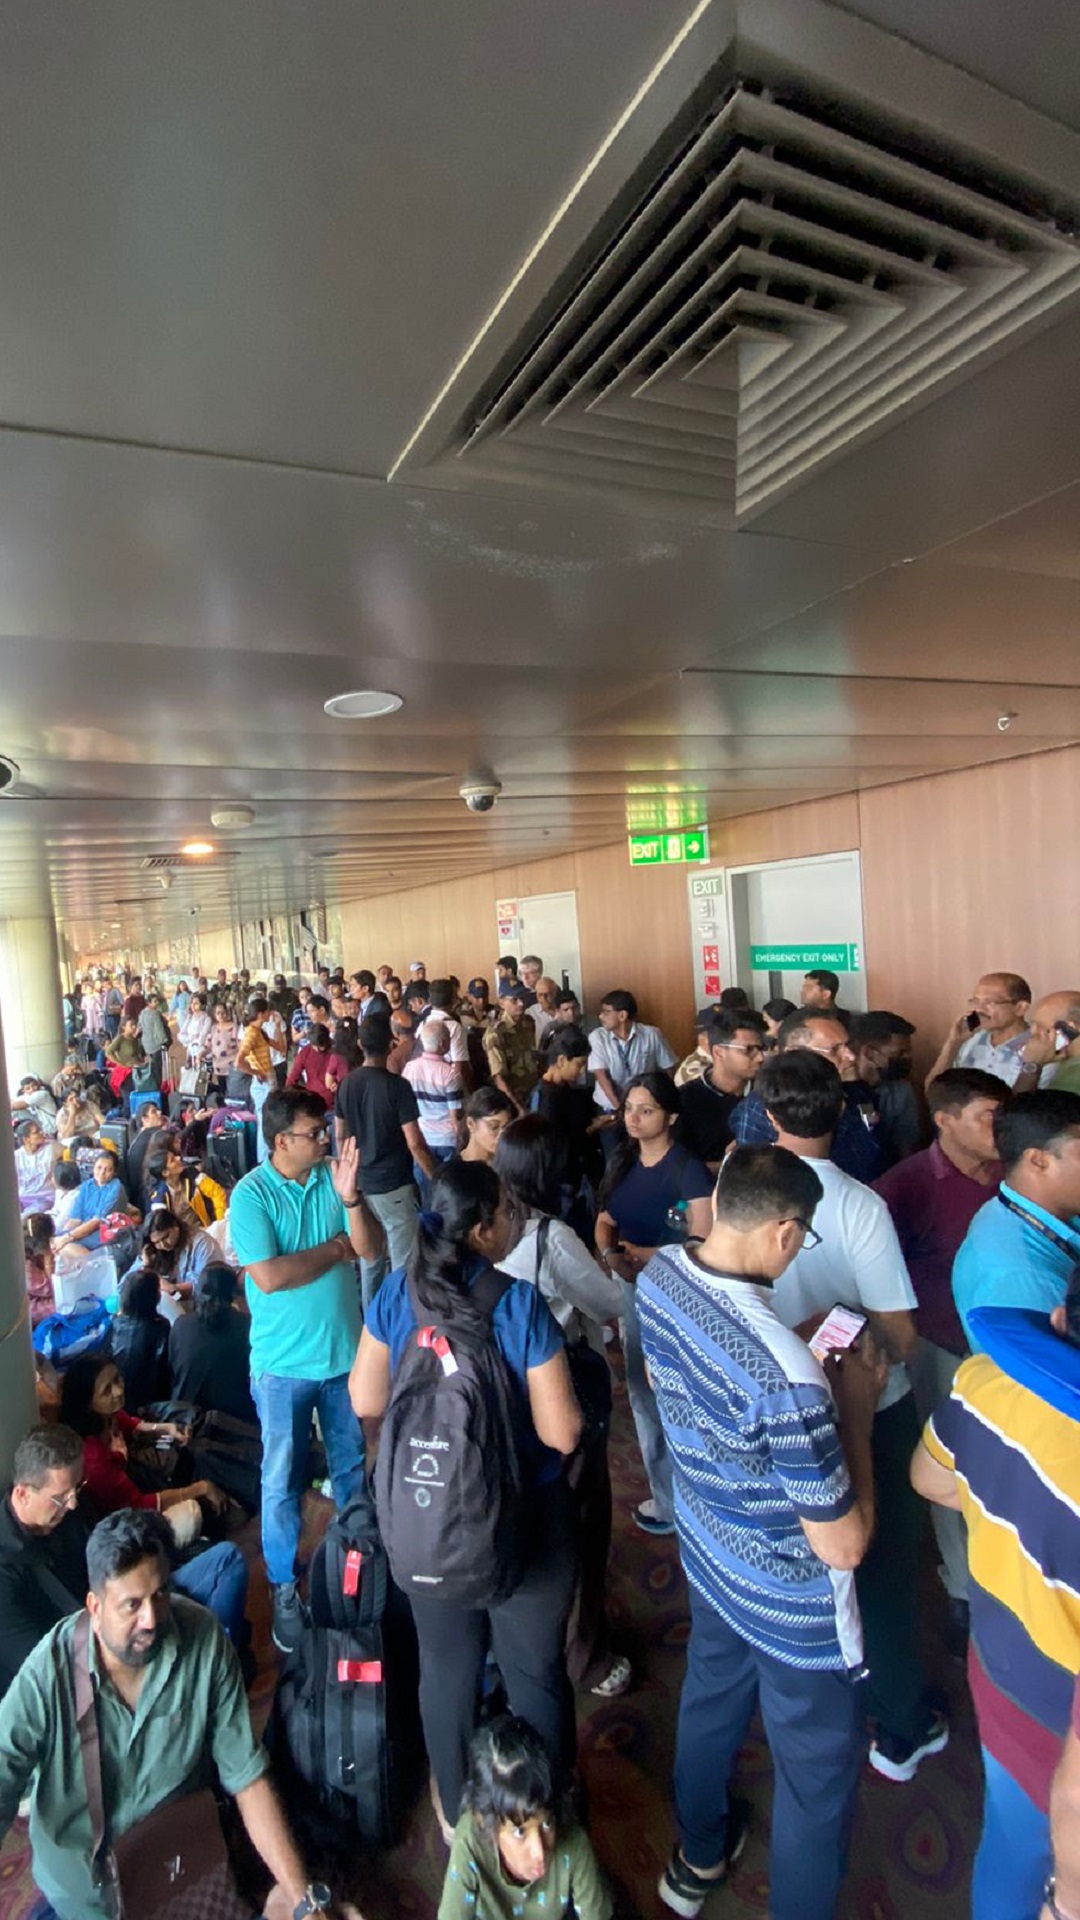 VietJet passengers stranded at Mumbai airport